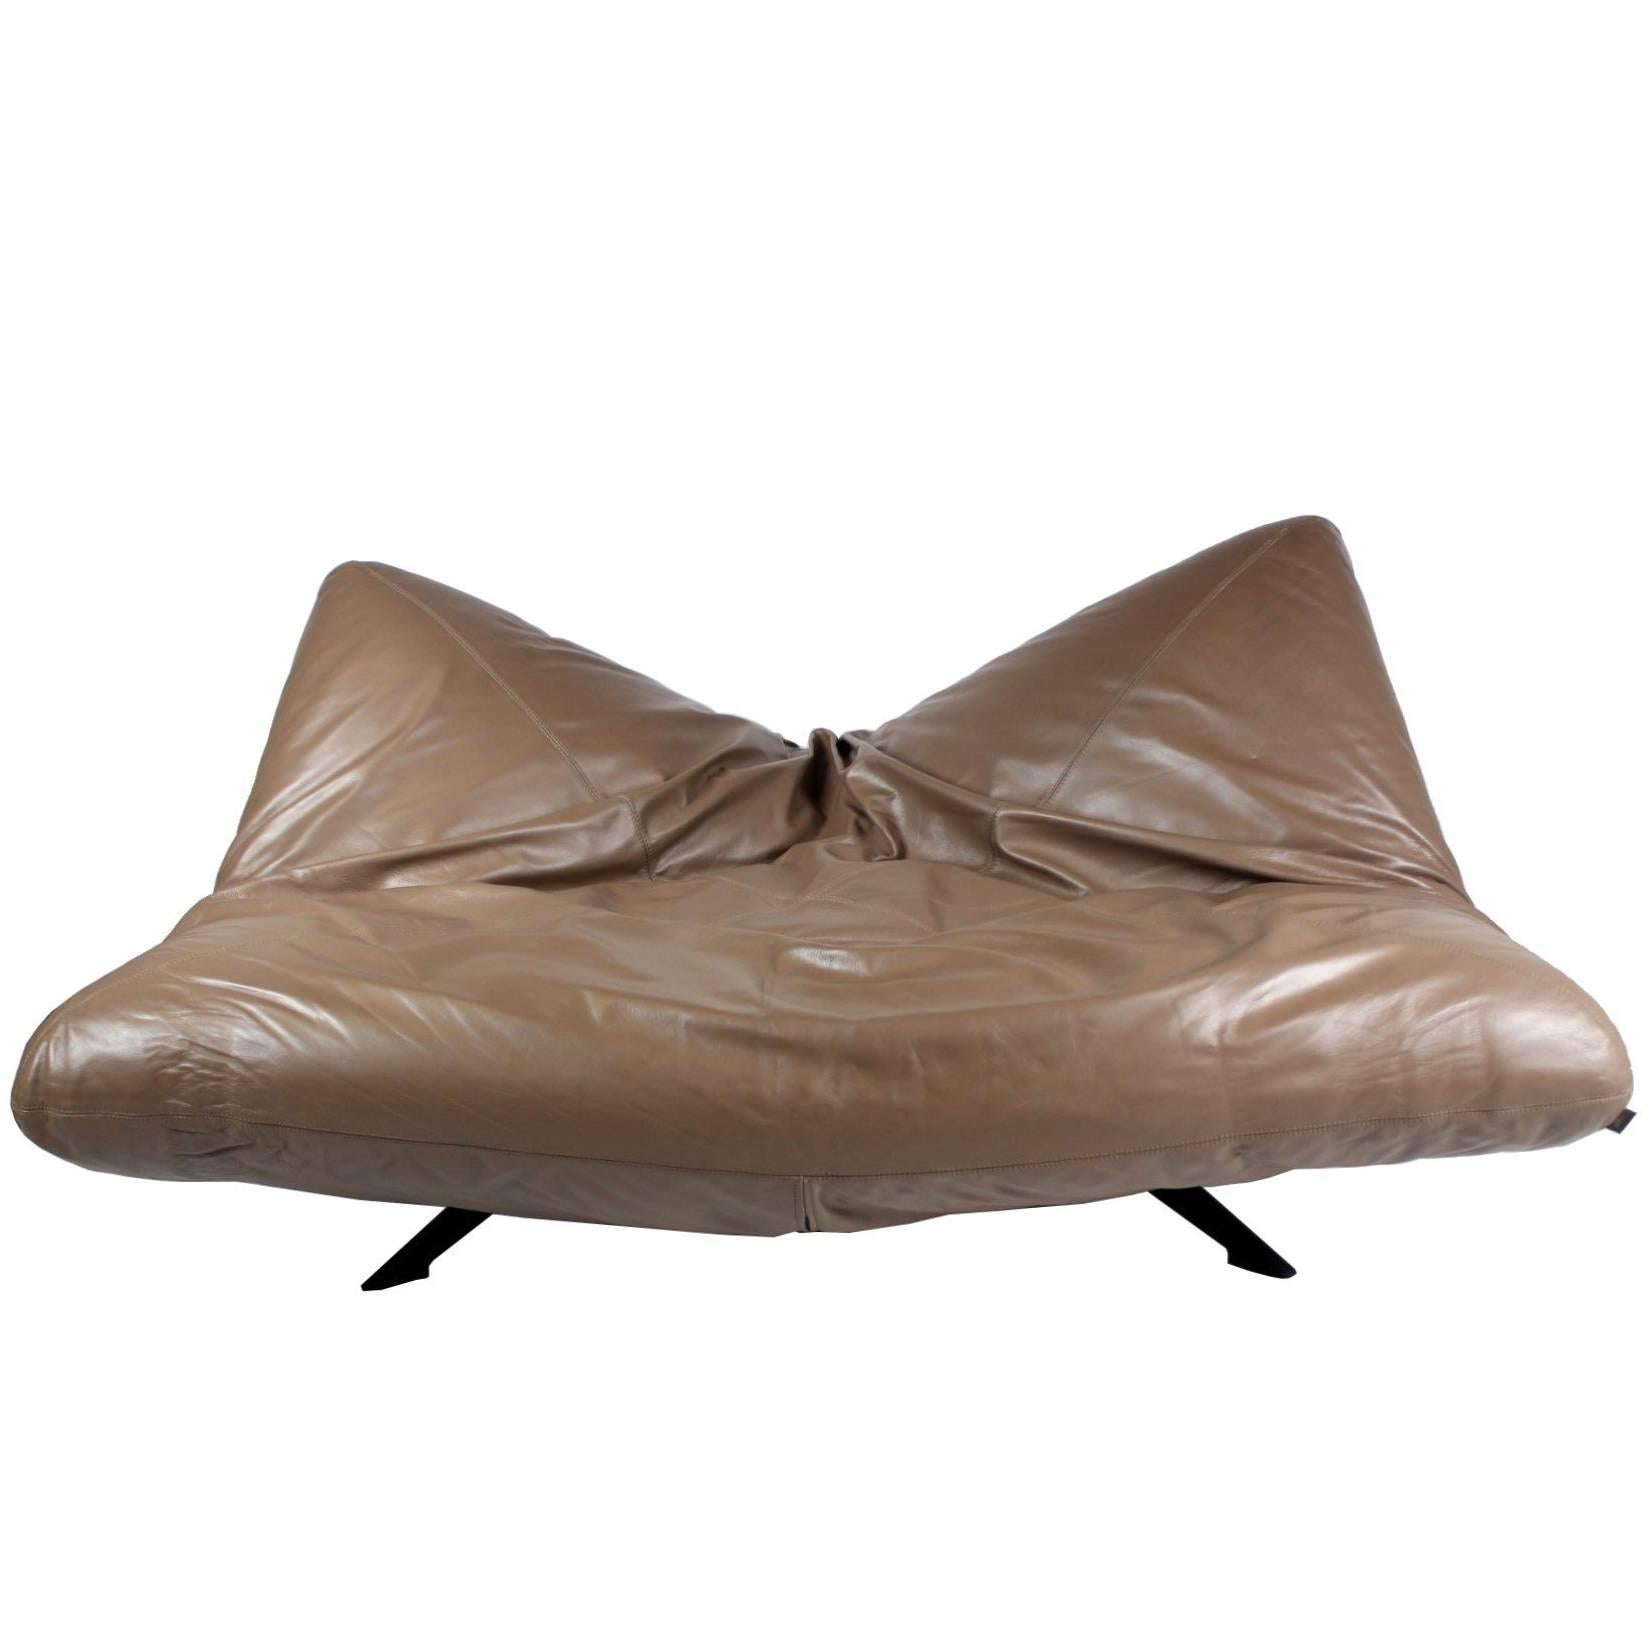 Ribalta Leather Sofa, Designed by F. Ballardini and F. Forbicini, Arflex 1988